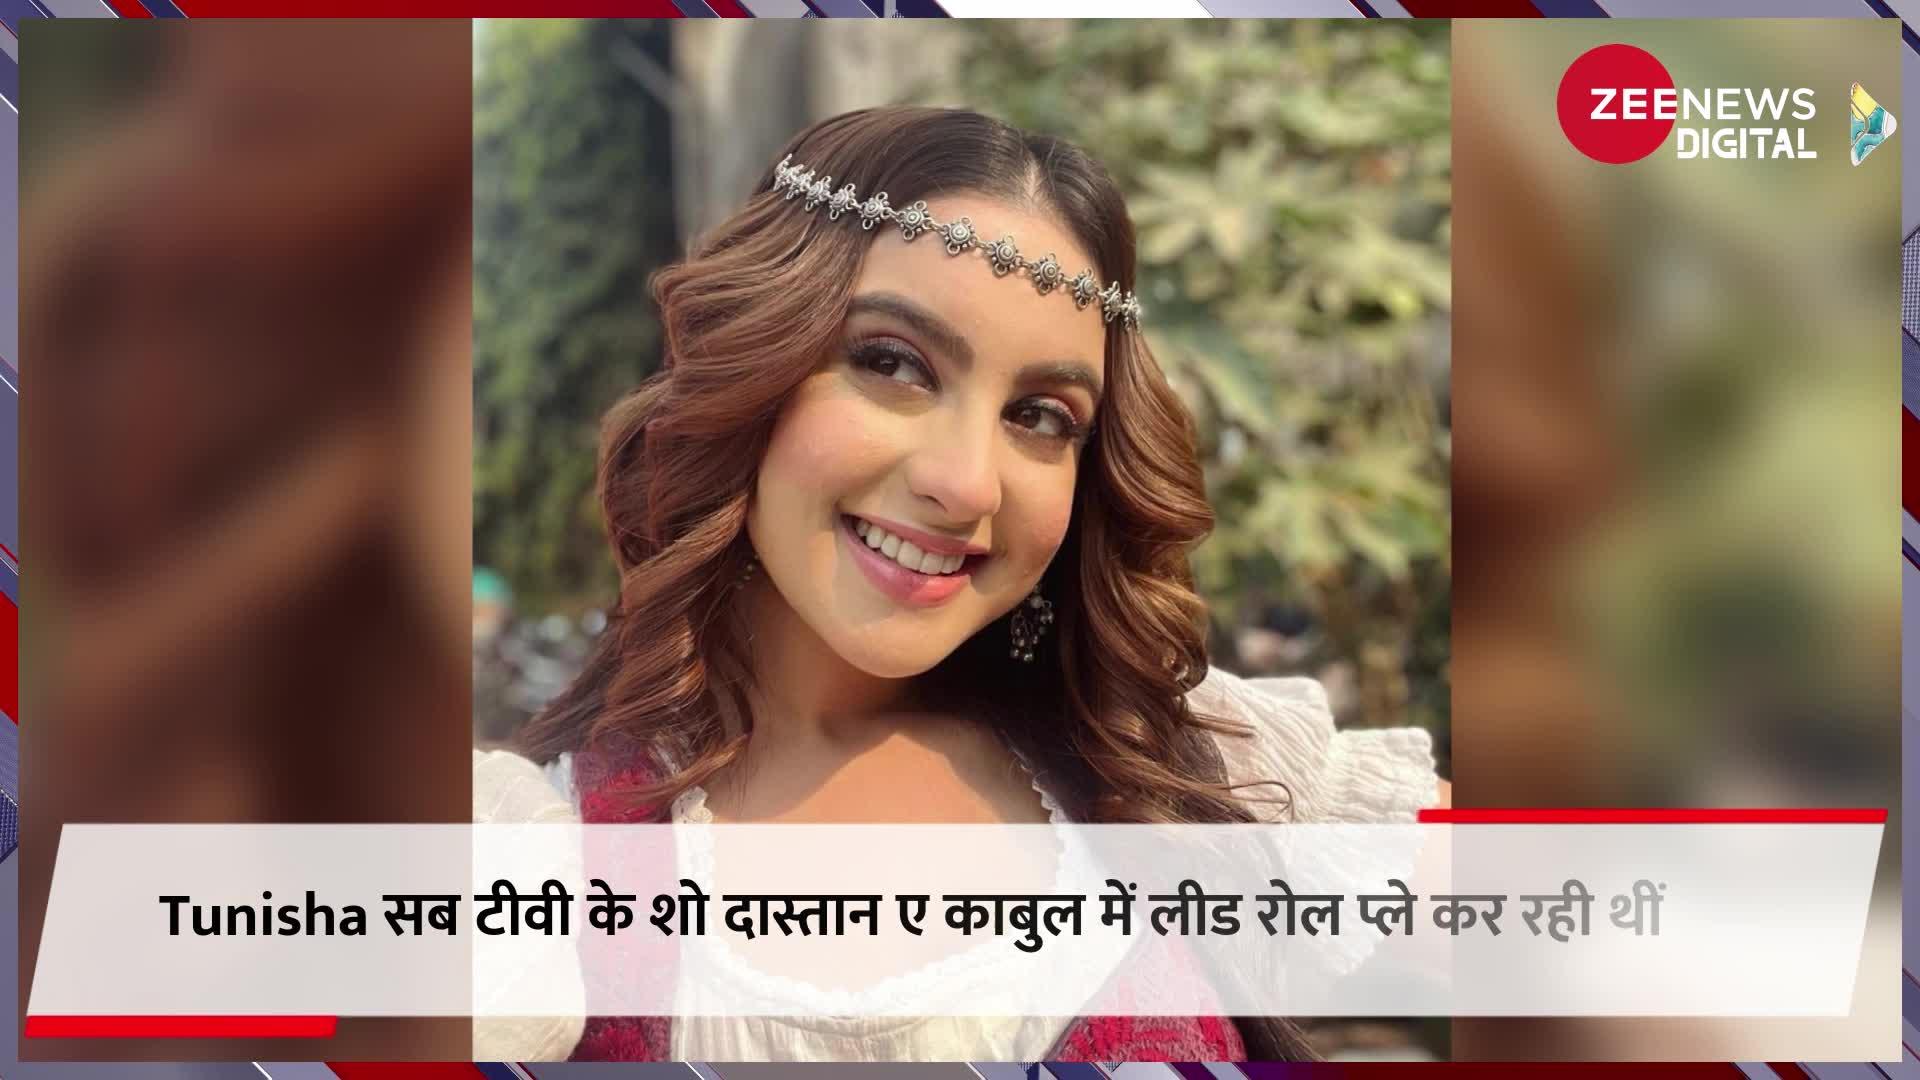 Tunisha Sharma Suicide: टीवी एक्ट्रेस तुनिषा शर्मा ने शो के सेट पर की आत्महत्या, फांसी लगाकर दे दी जान